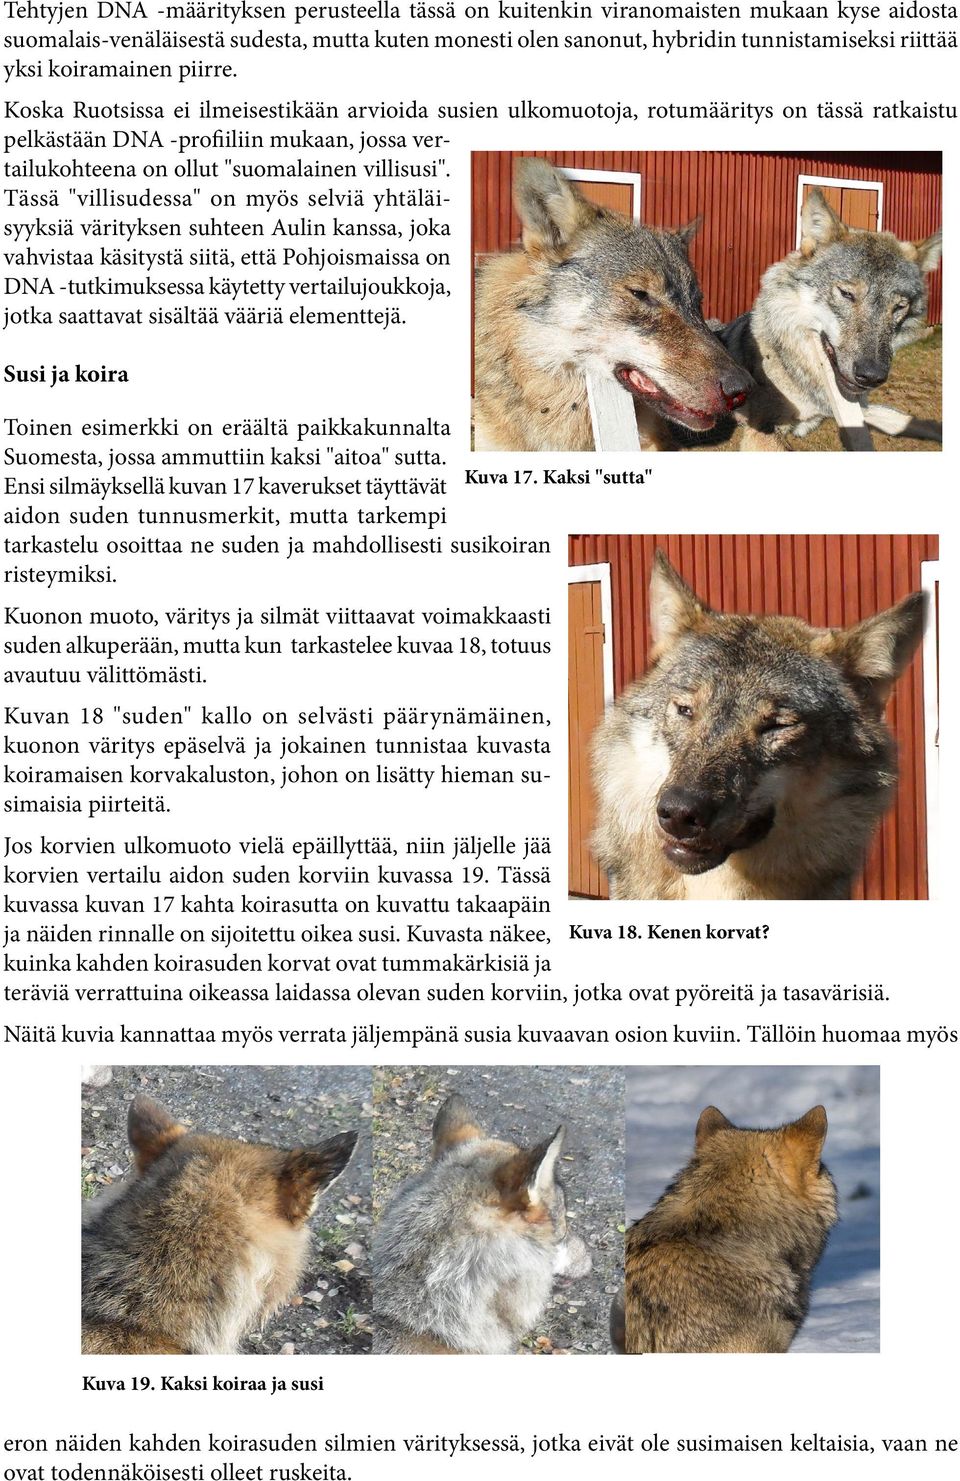 Koska Ruotsissa ei ilmeisestikään arvioida susien ulkomuotoja, rotumääritys on tässä ratkaistu pelkästään DNA -profiiliin mukaan, jossa vertailukohteena on ollut "suomalainen villisusi".